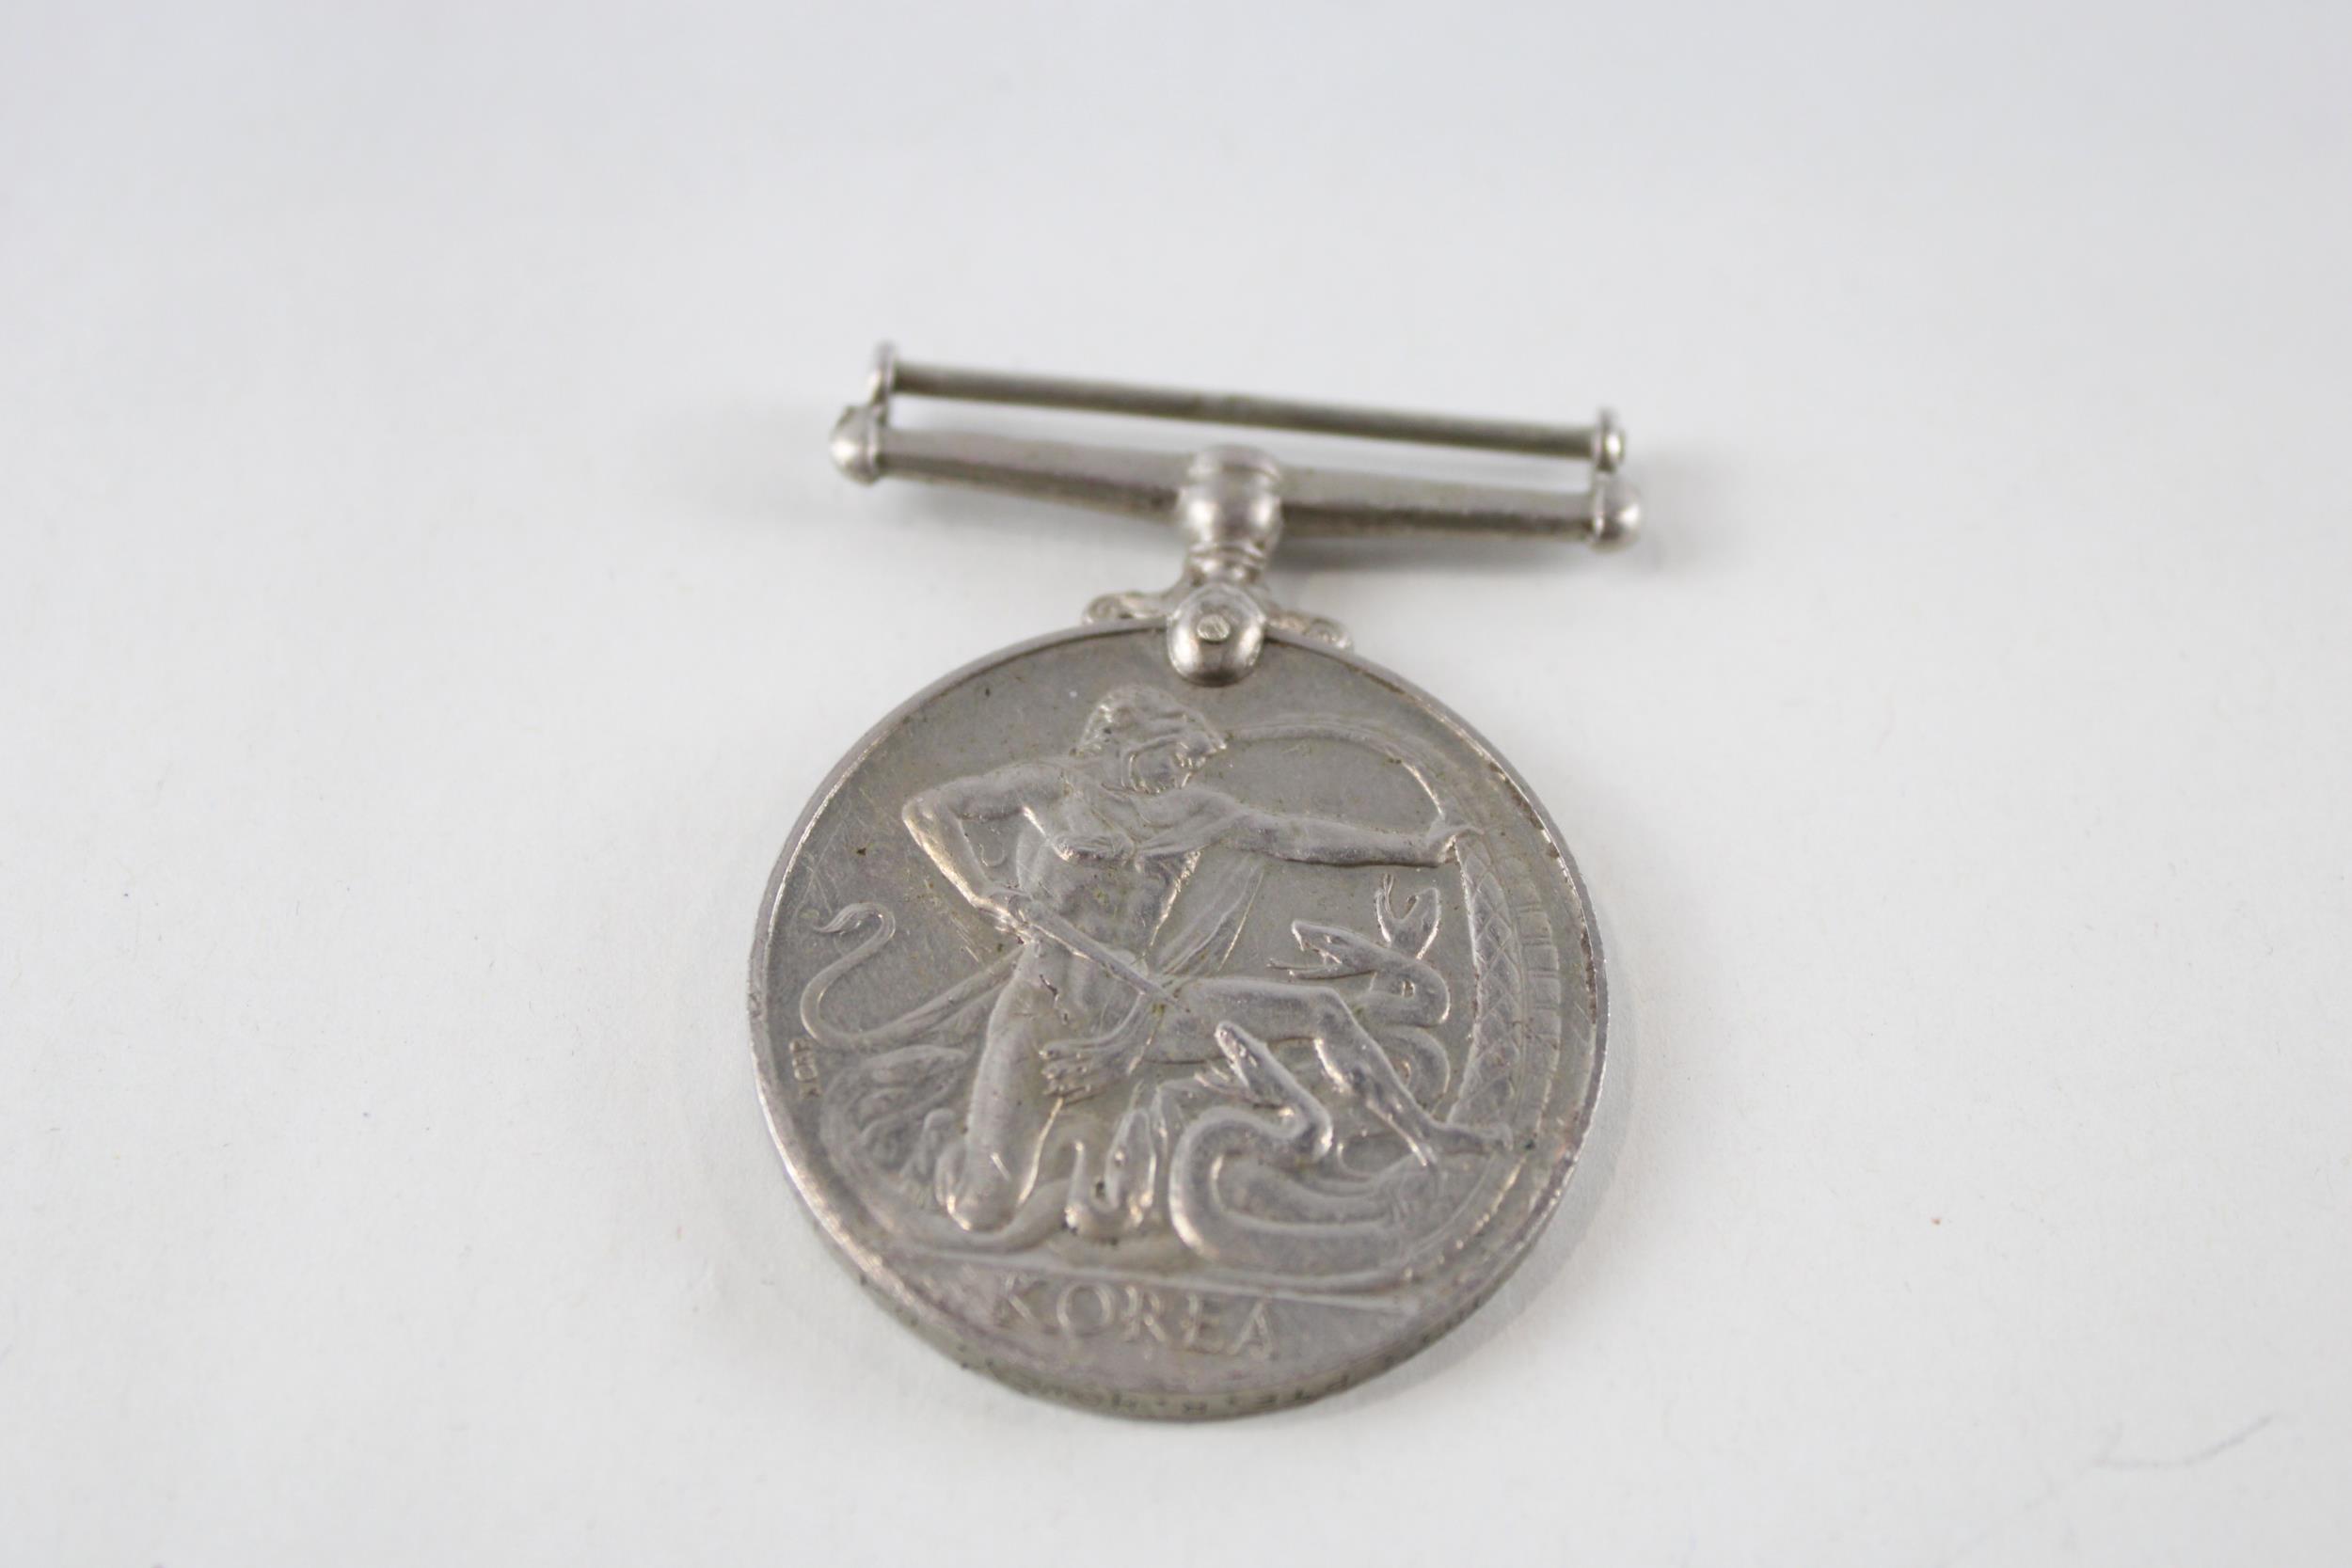 ER.II Queens Korea Medal. Named. 22634833 Pte. R. Howey D.L.I // ER.II Queens Korea Medal. Named.